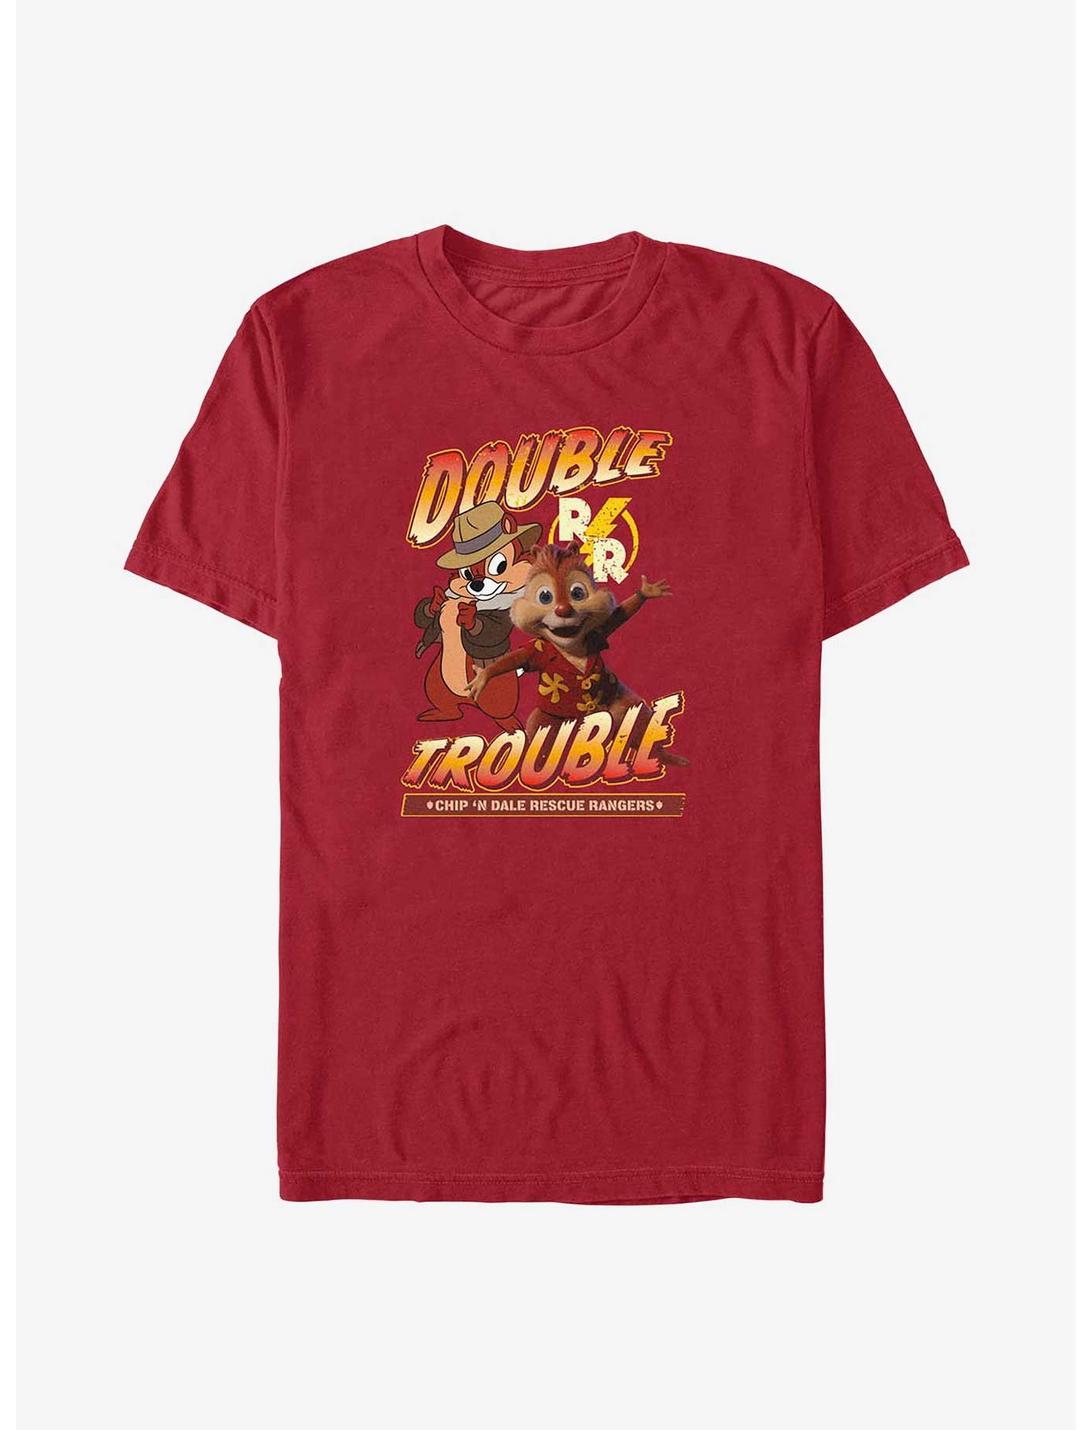 Disney Chip 'n Dale Double Trouble T-Shirt, CARDINAL, hi-res